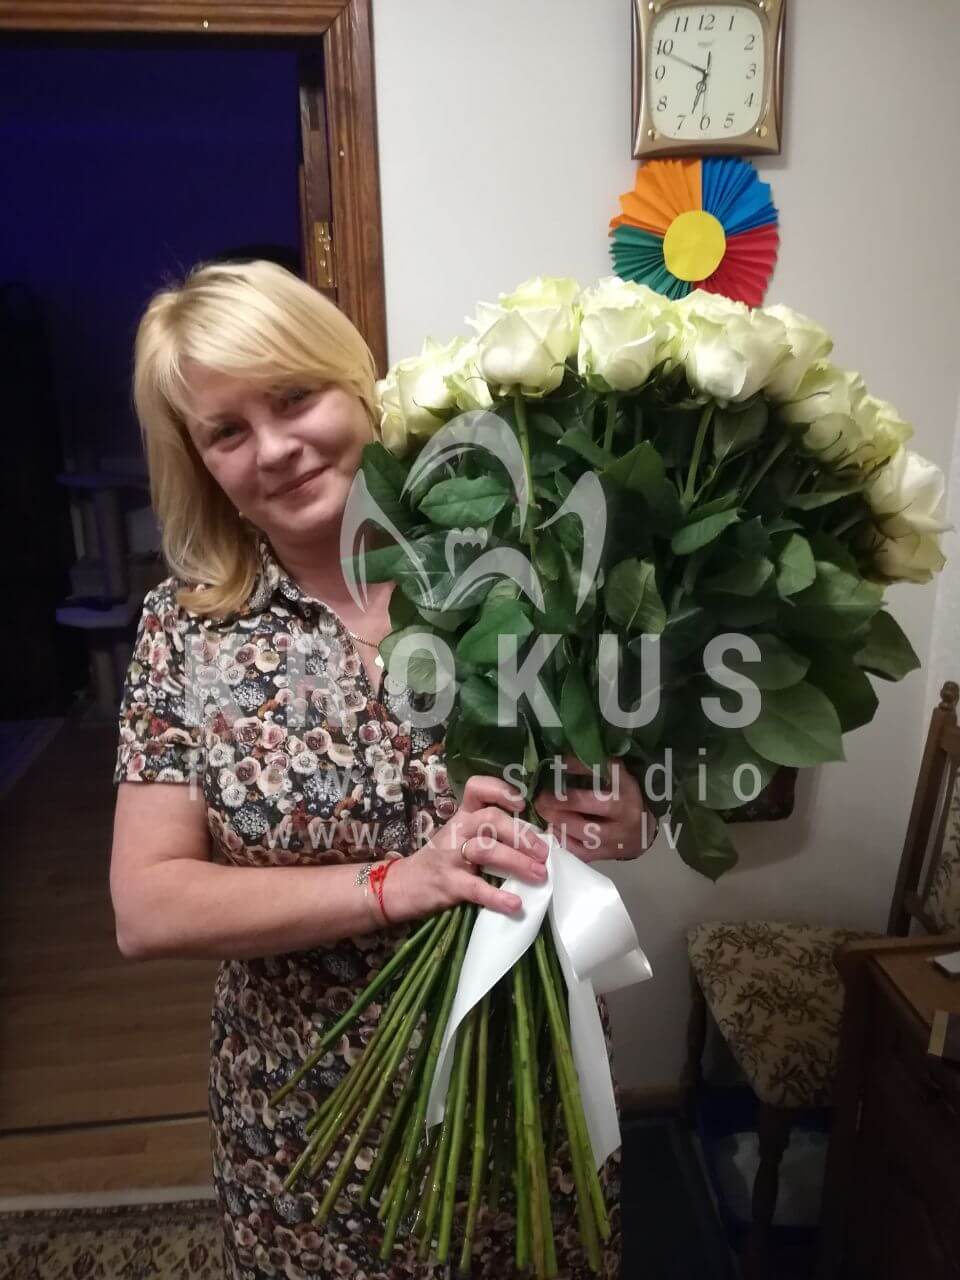 Доставка цветов в город Рига (белые розы)